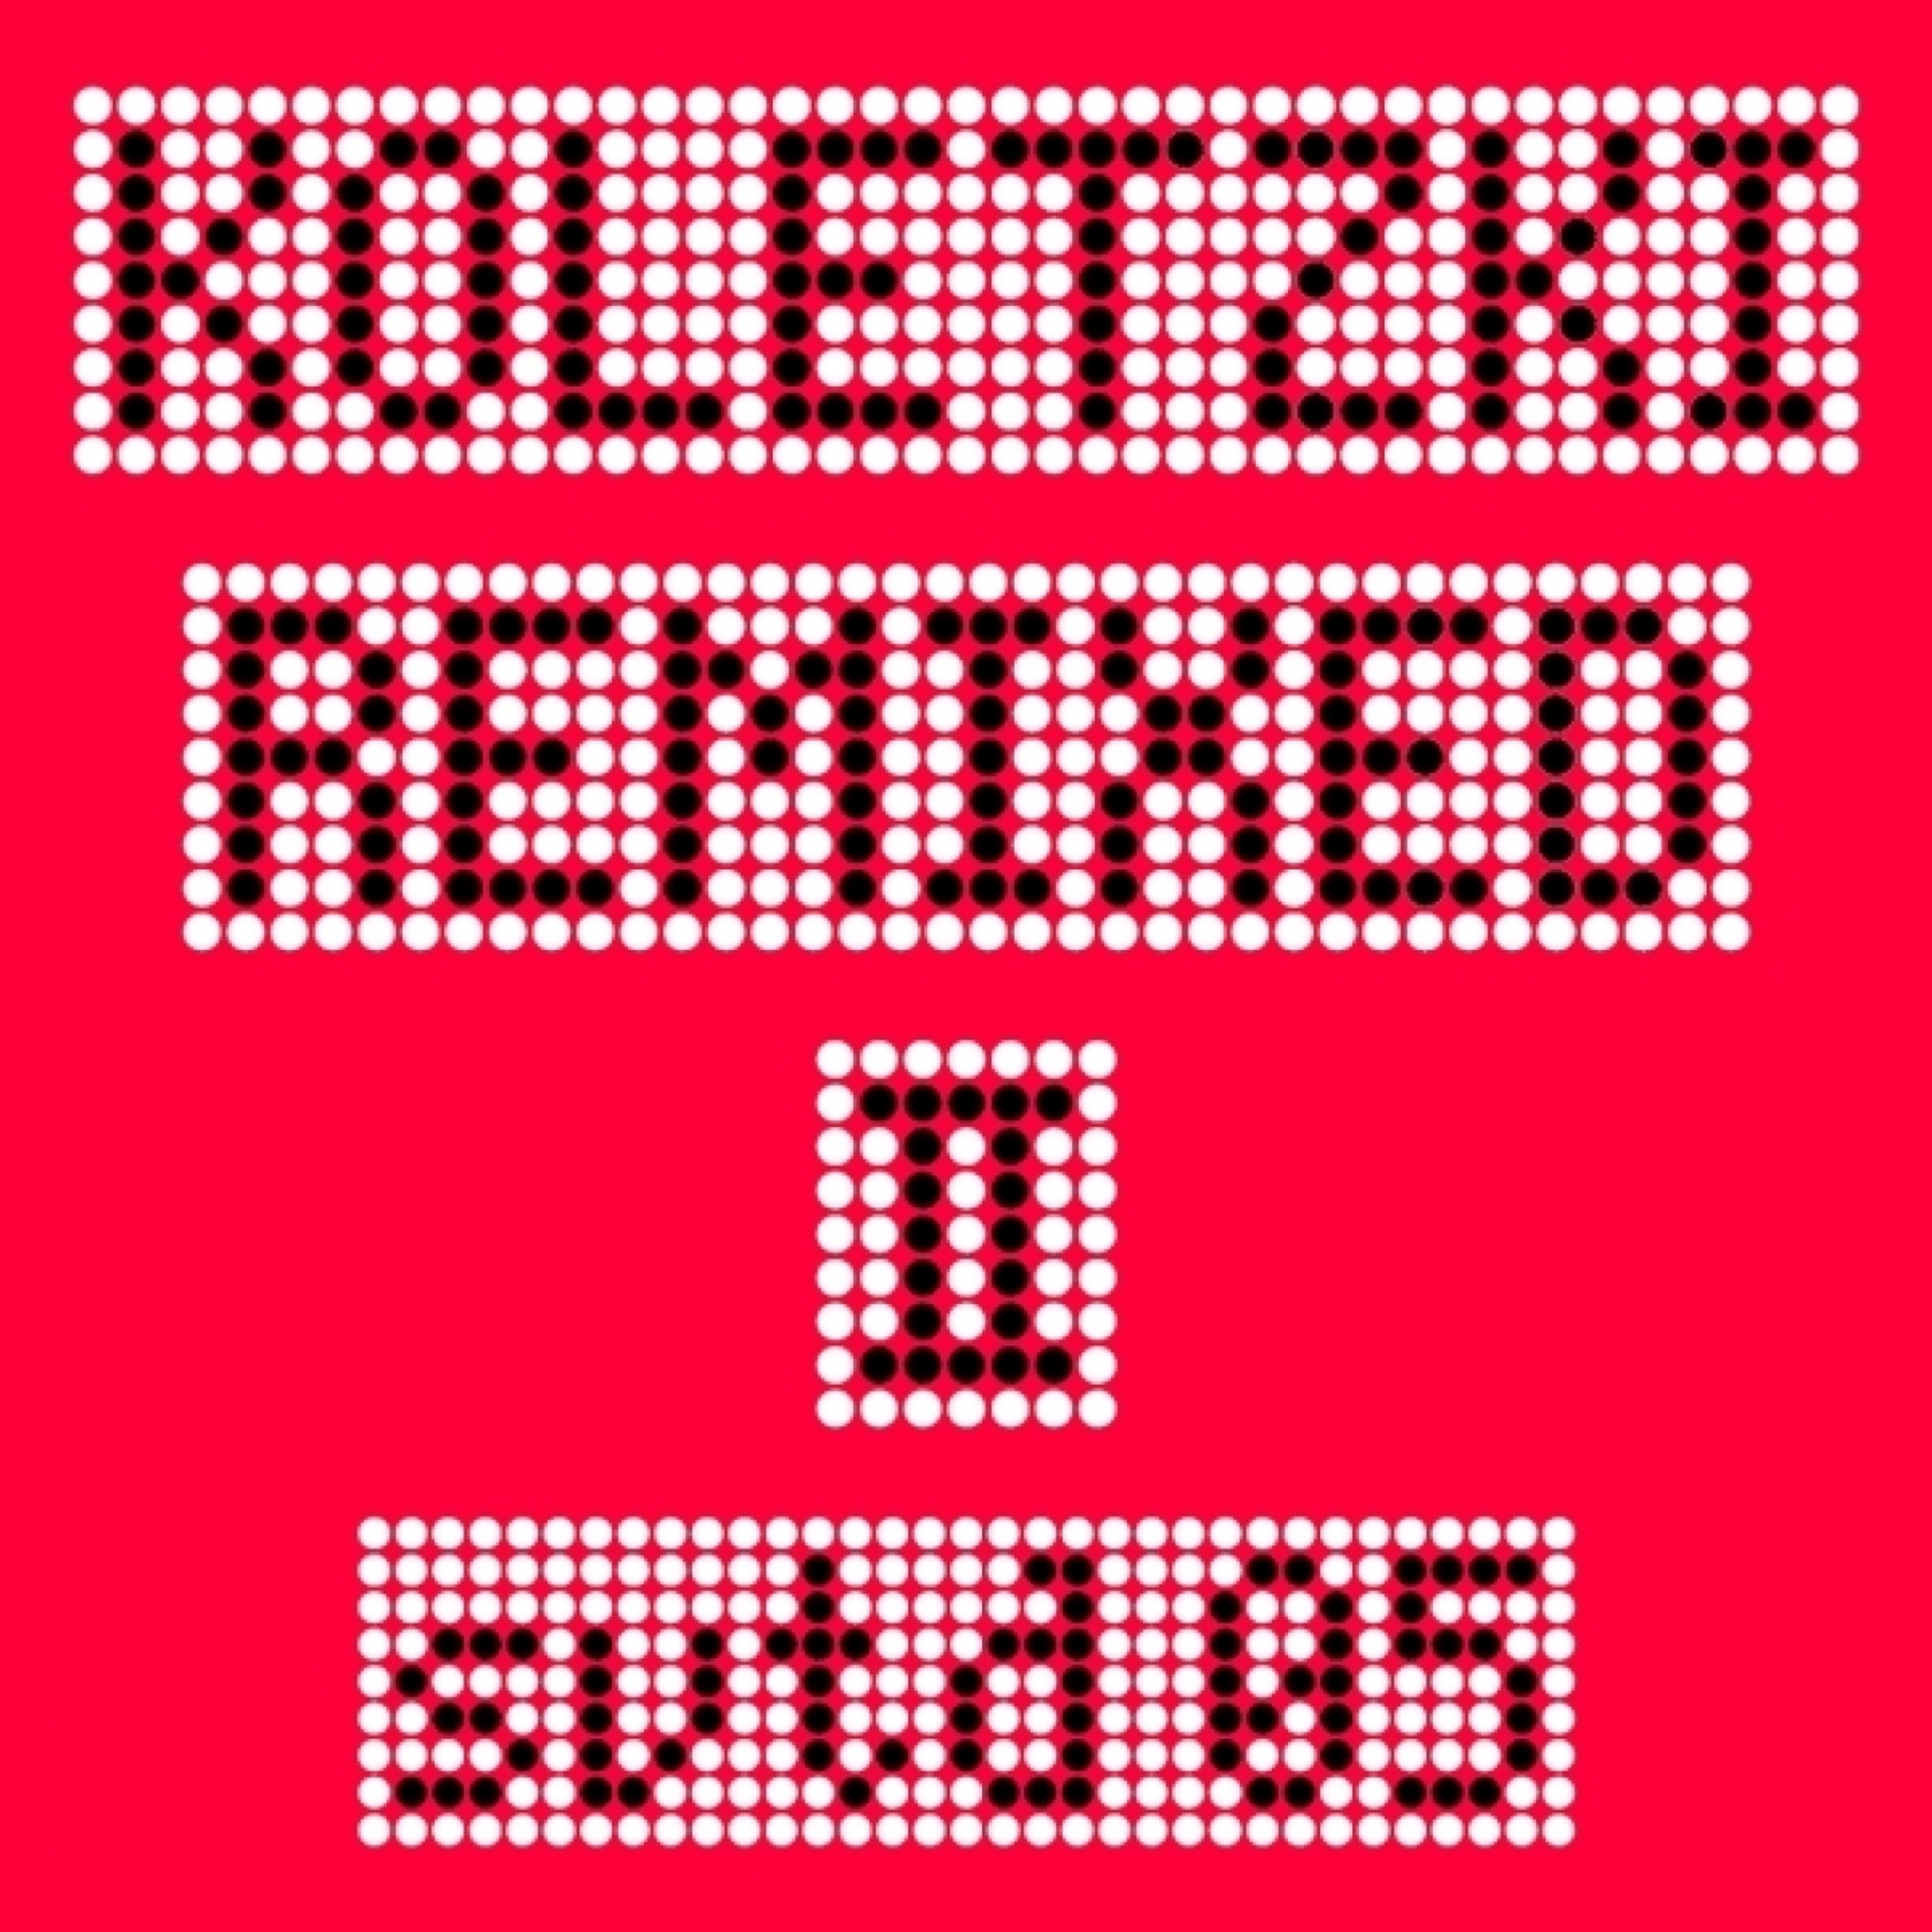 Koletzki remixed02